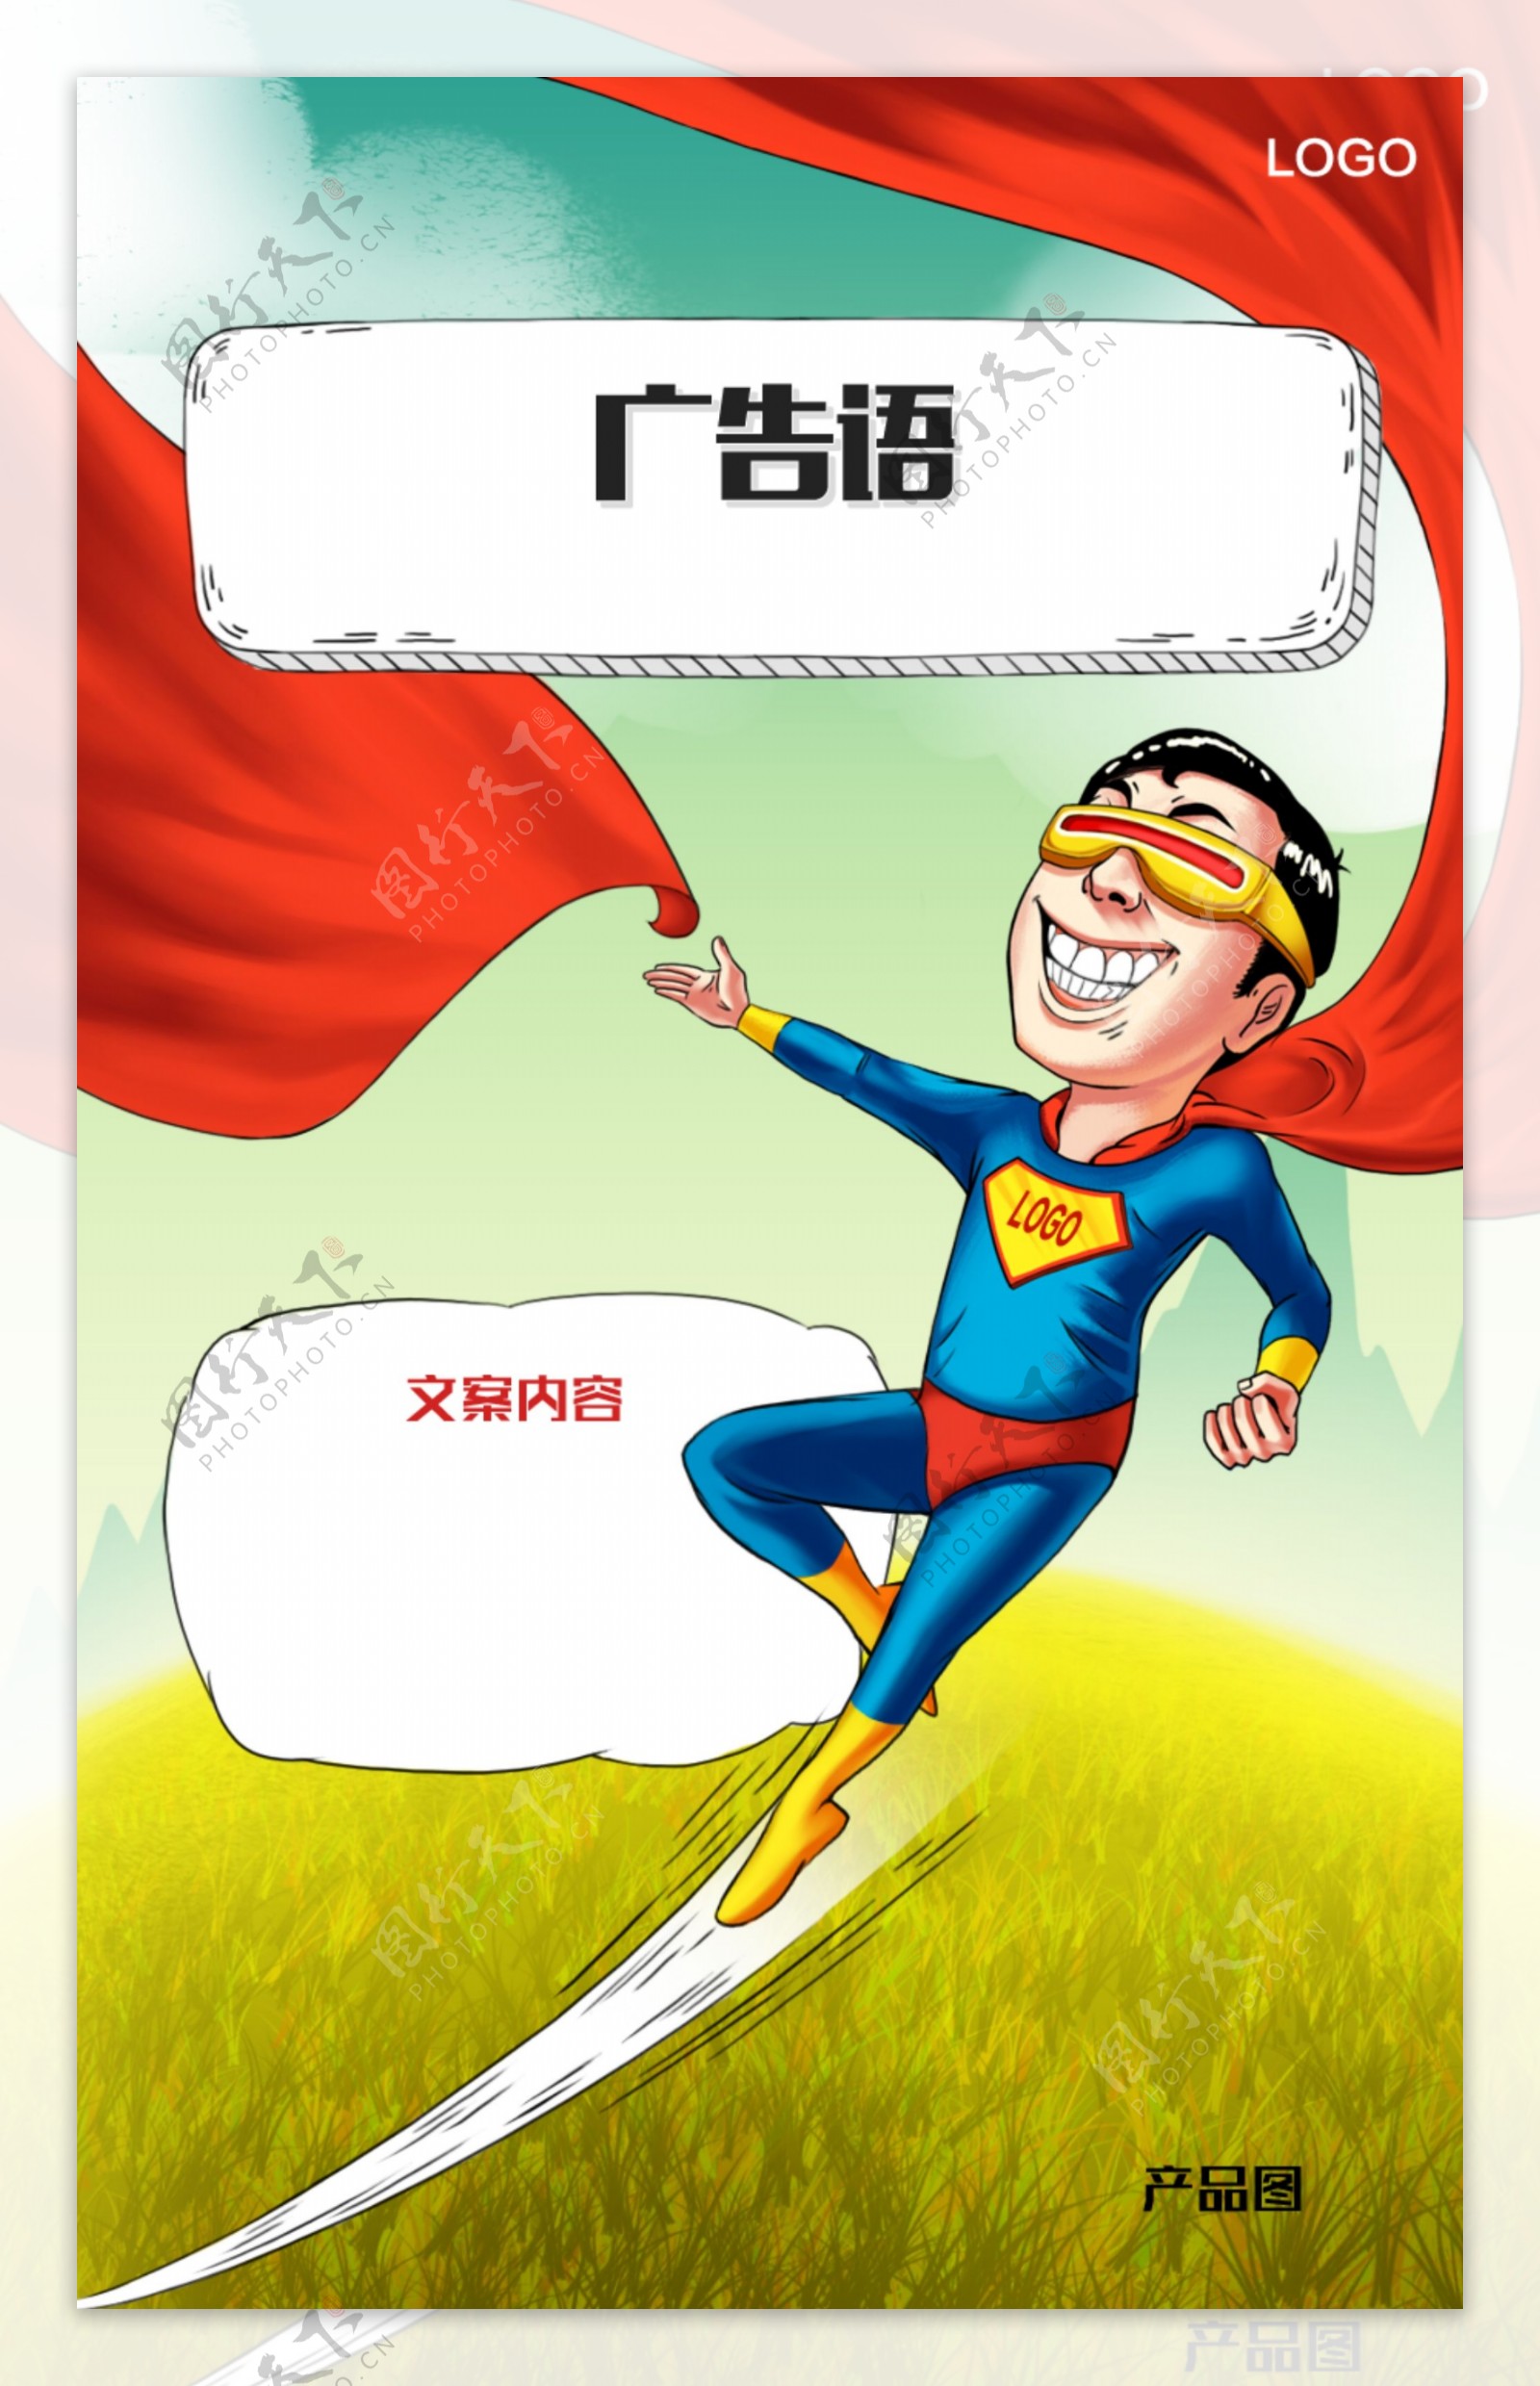 超人角色创意插画海报